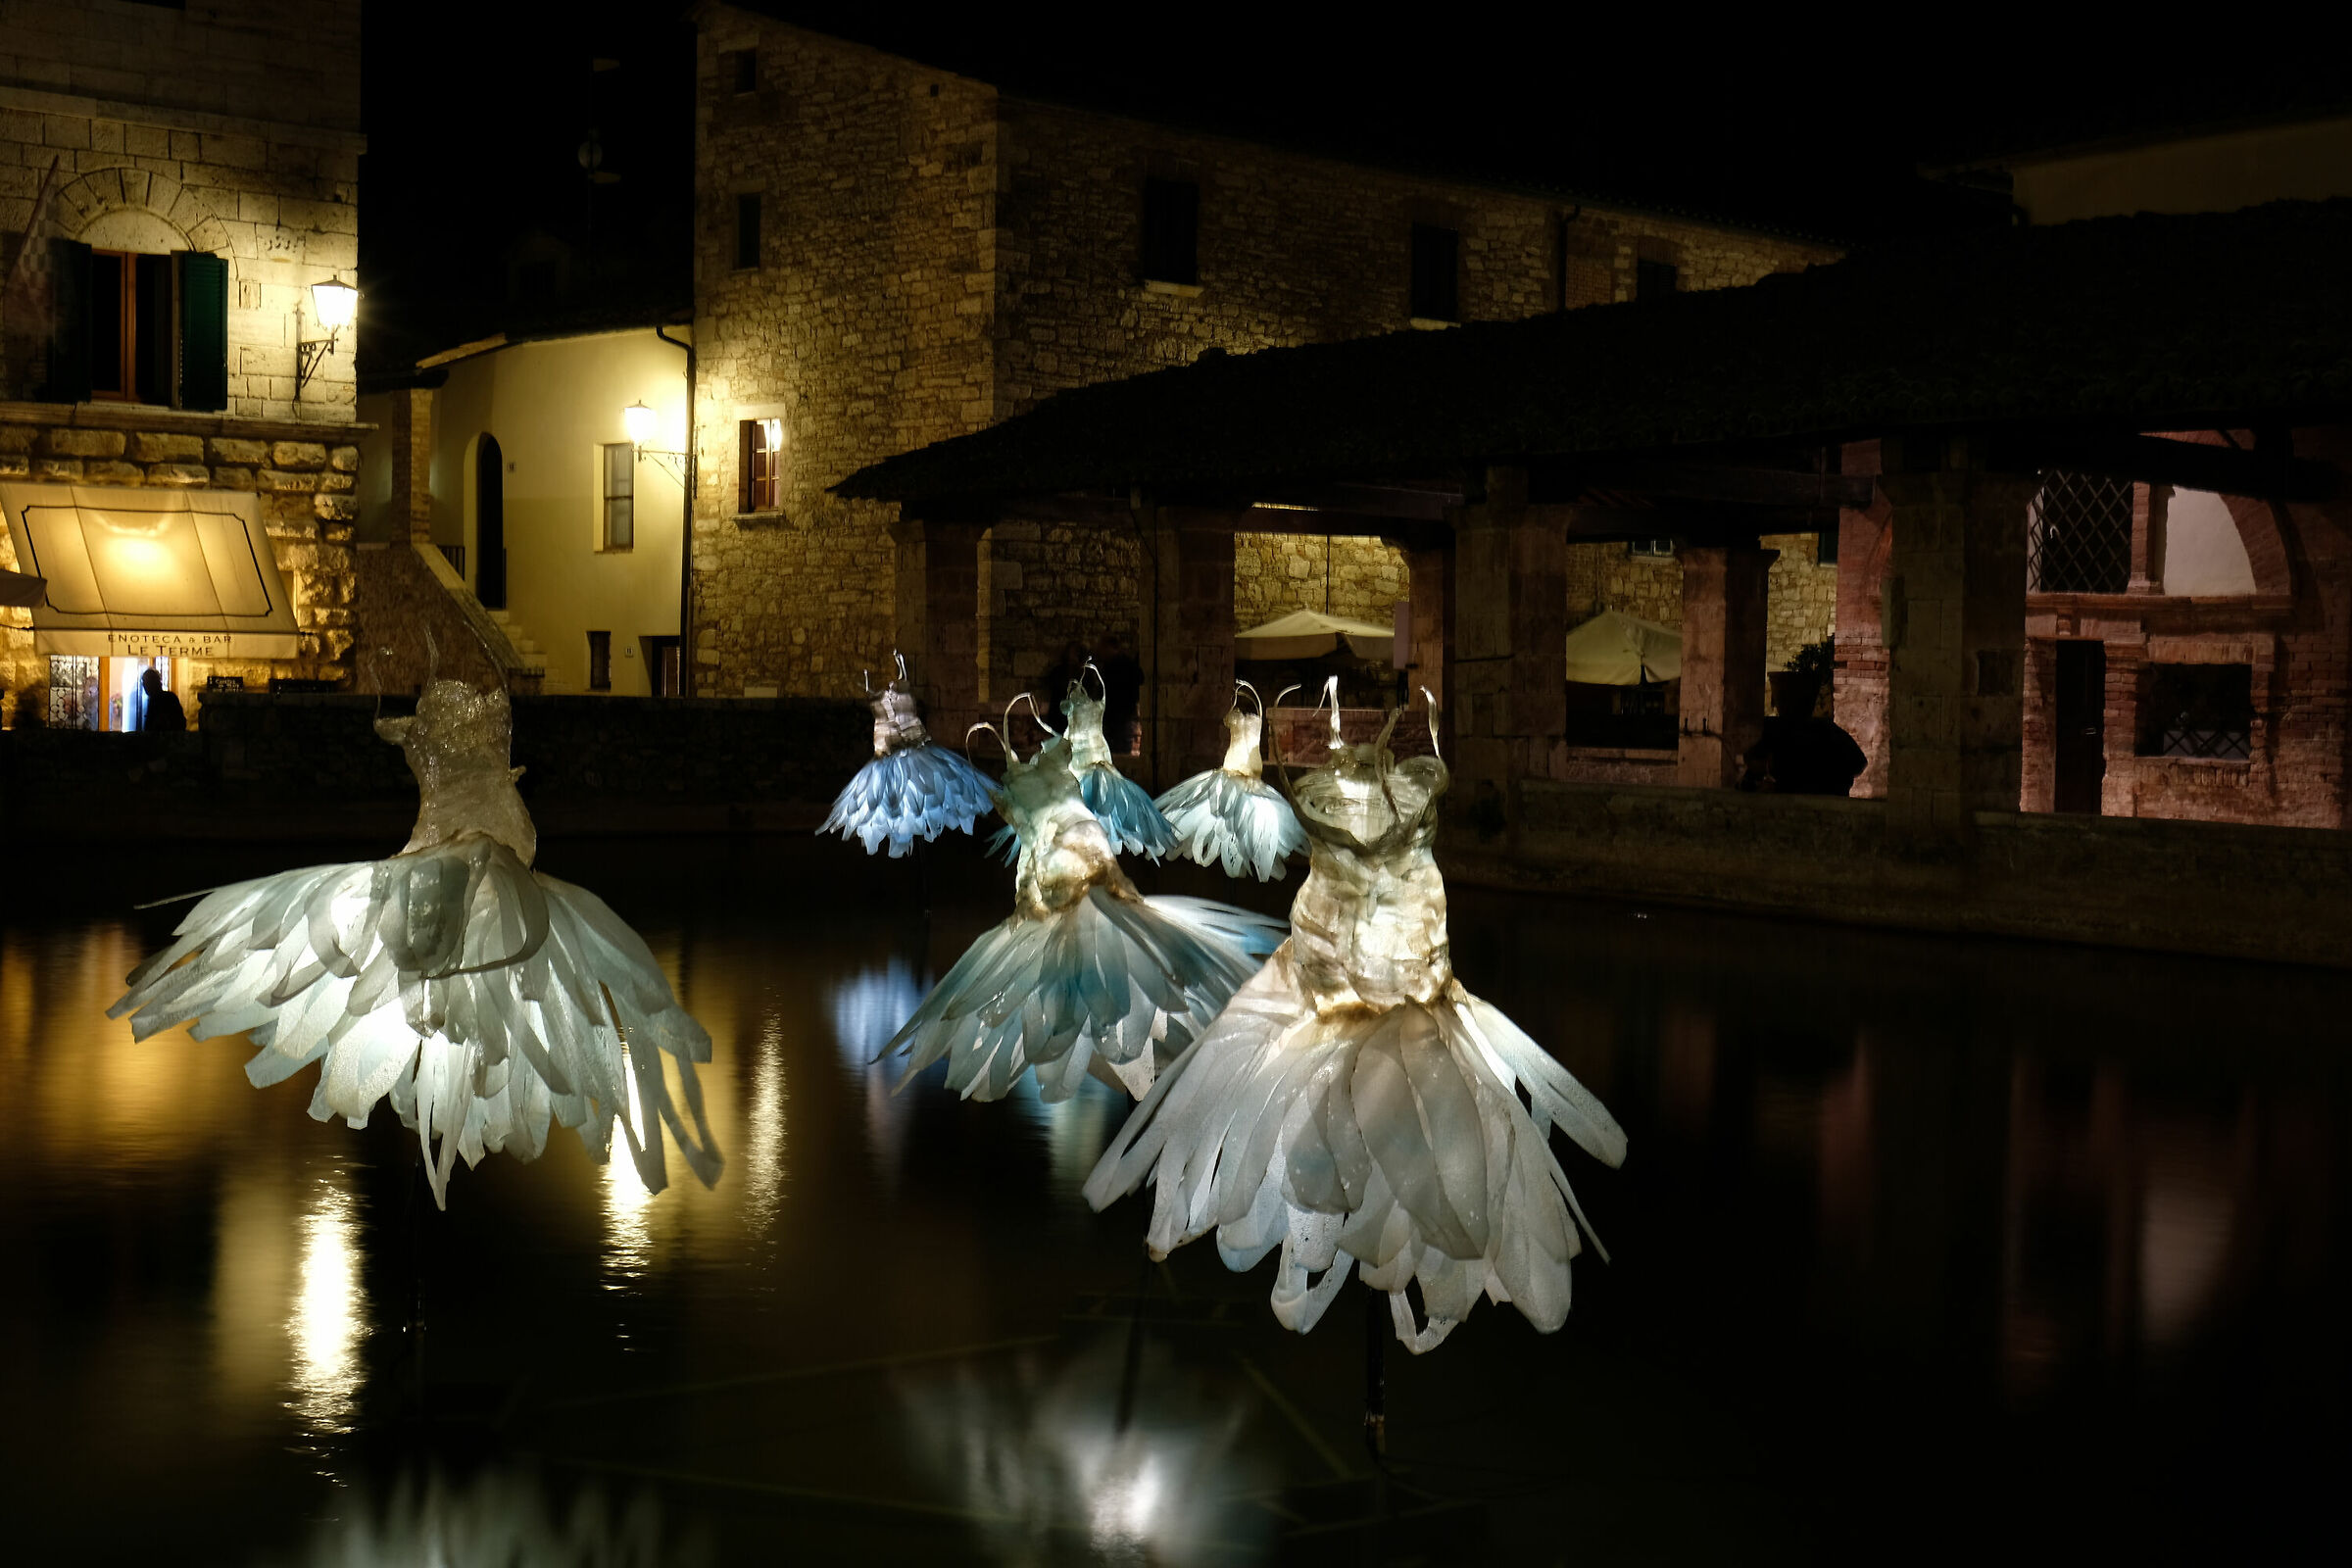 The dancers of Bagno Vignoni...